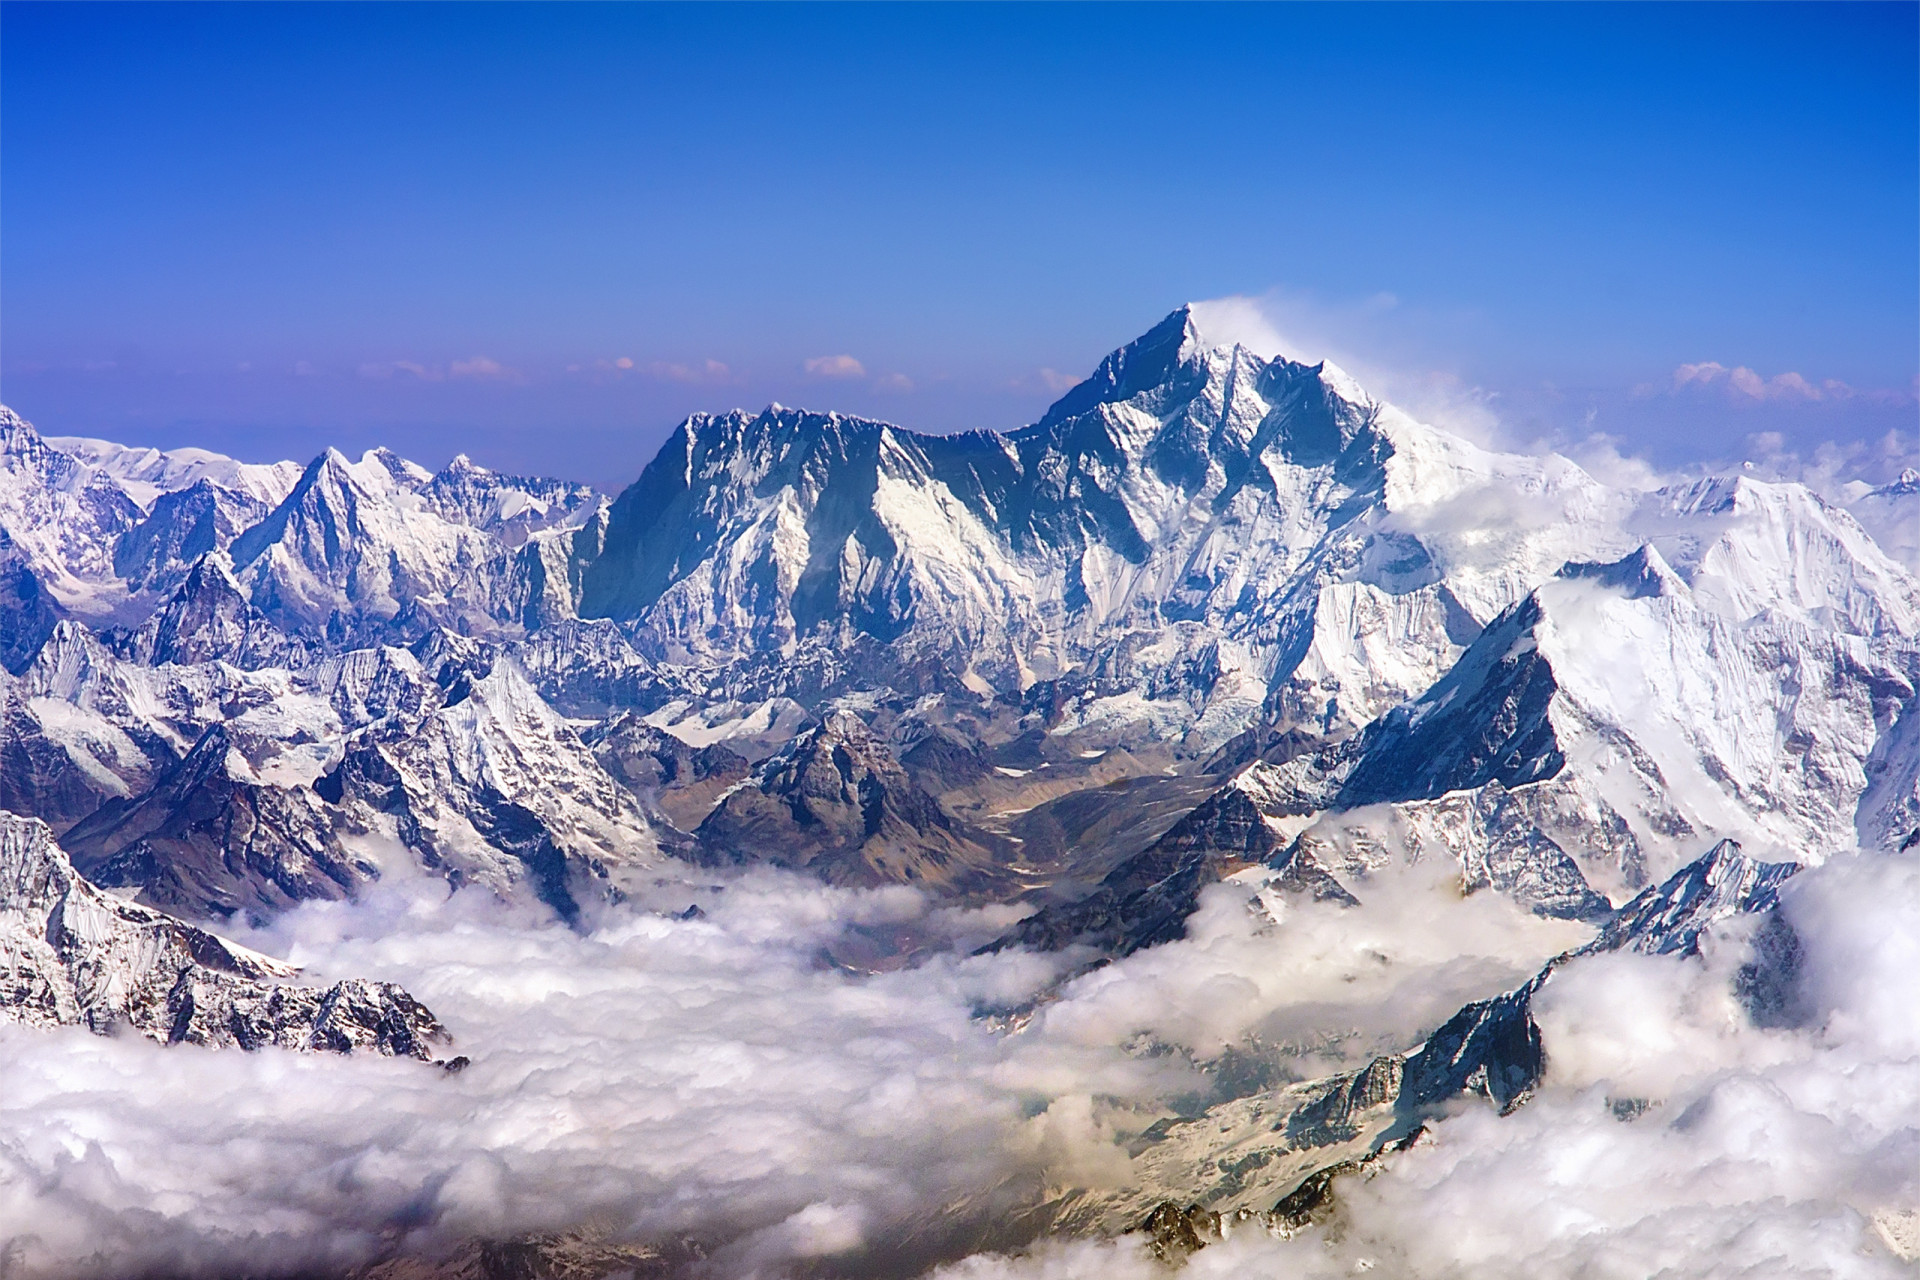 Гималаи место. Тибет Эверест Гималаи. Гора Эверест (Джомолунгма). Гималаи. Непал Гималаи. Лхоцзе Гималаи Непал.